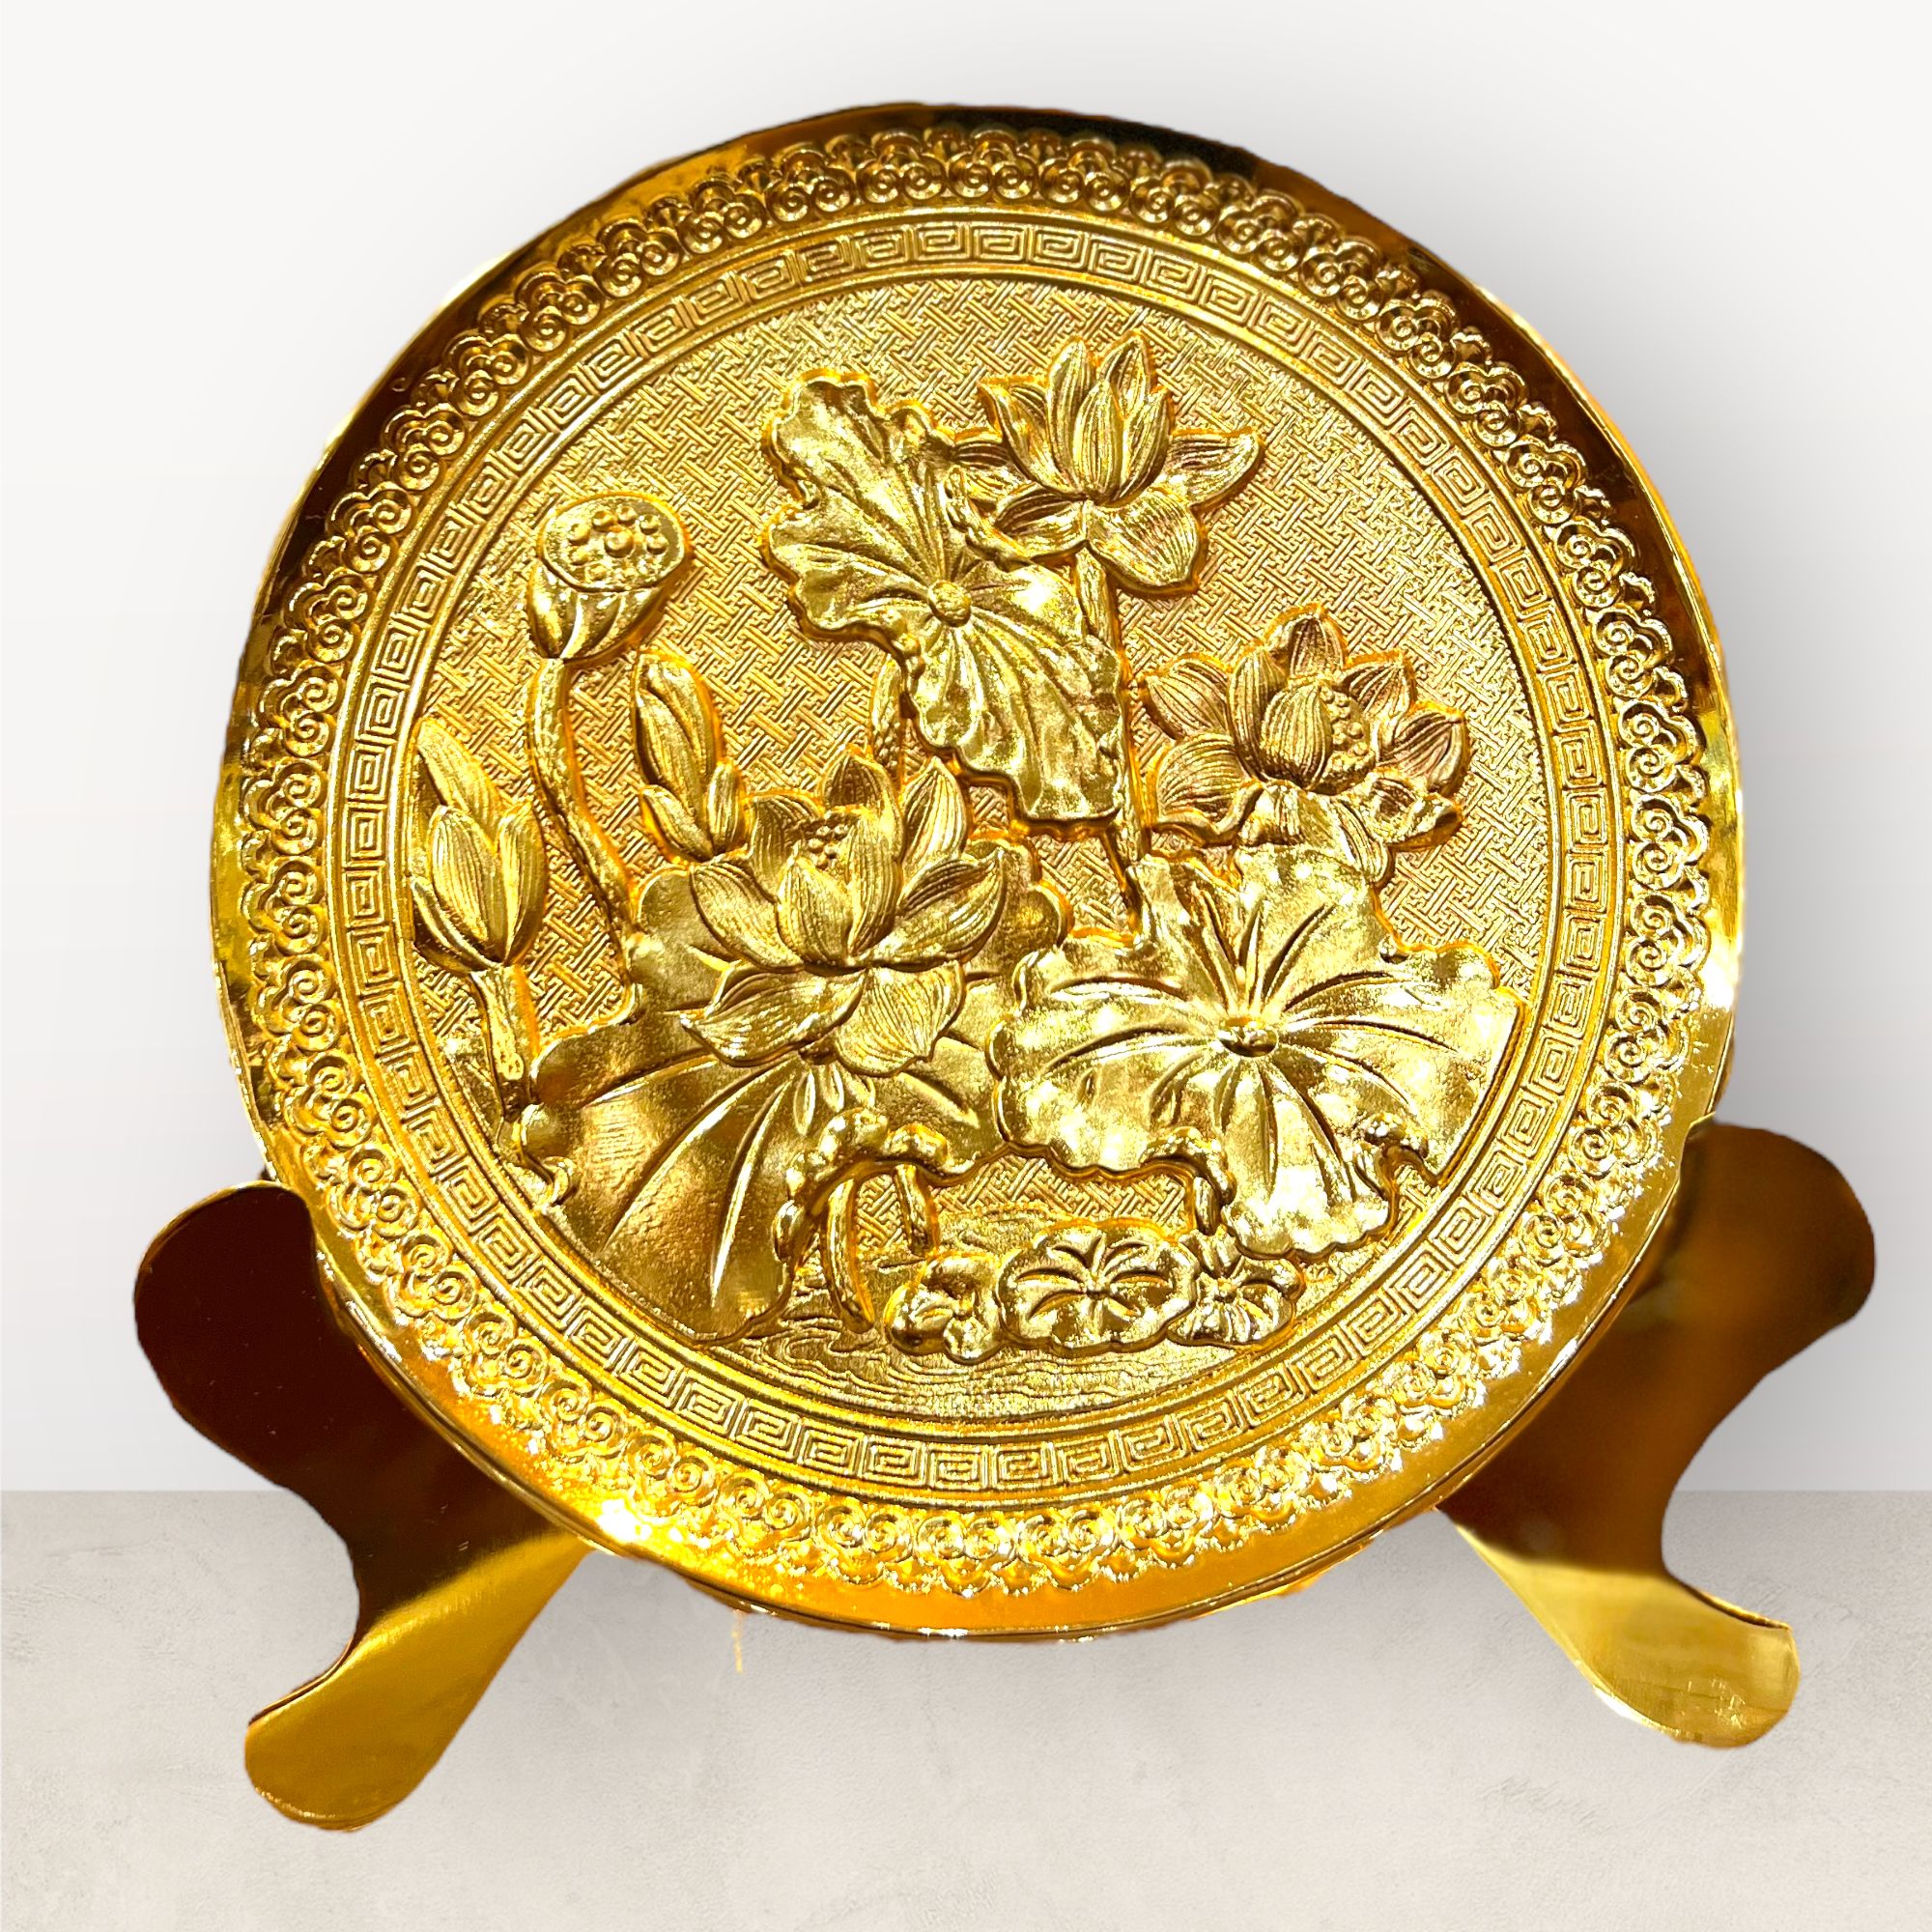  Tranh để bàn hoa sen đĩa đồng vàng mạ vàng 24K đk 20cm mẫu 1 